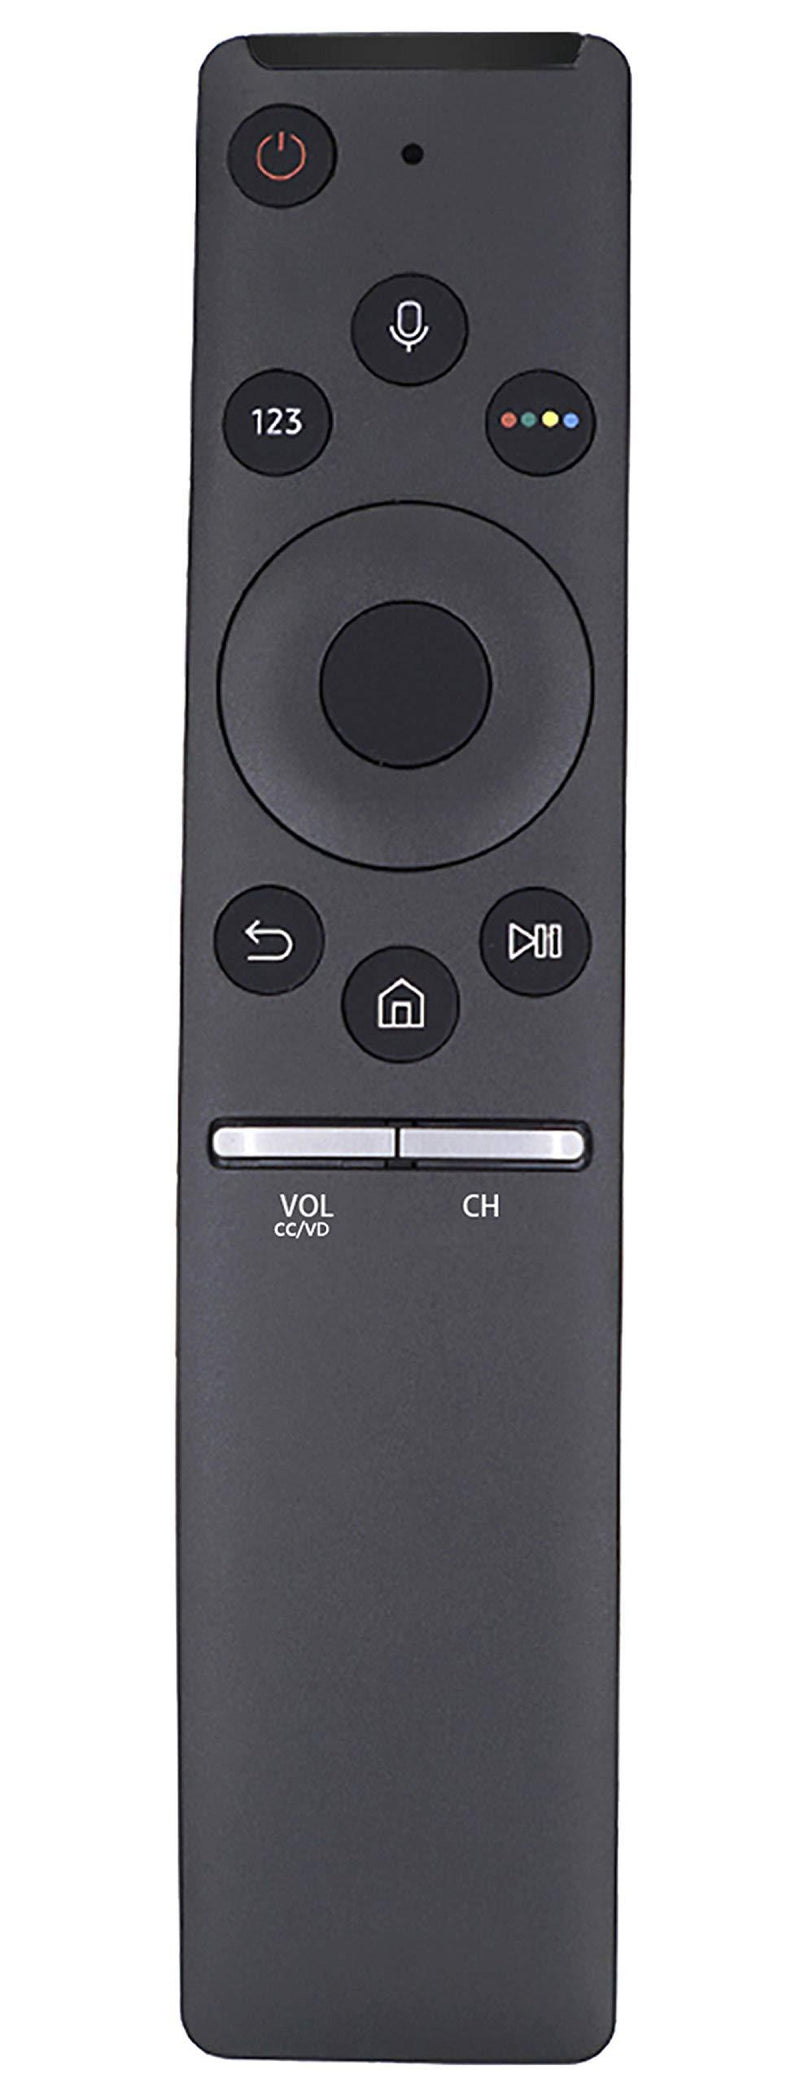 BN59-01292A Replace Voice Remote Compatible with Samsung Smart TV RMCSPM1AP1 UN40MU6300FXZA UN40MU630DFXZA UN55MU8000FXZA UN55MU8500FXZA UN65MU630DFXZA UN65MU7100FXZA UN65MU8000FXZA